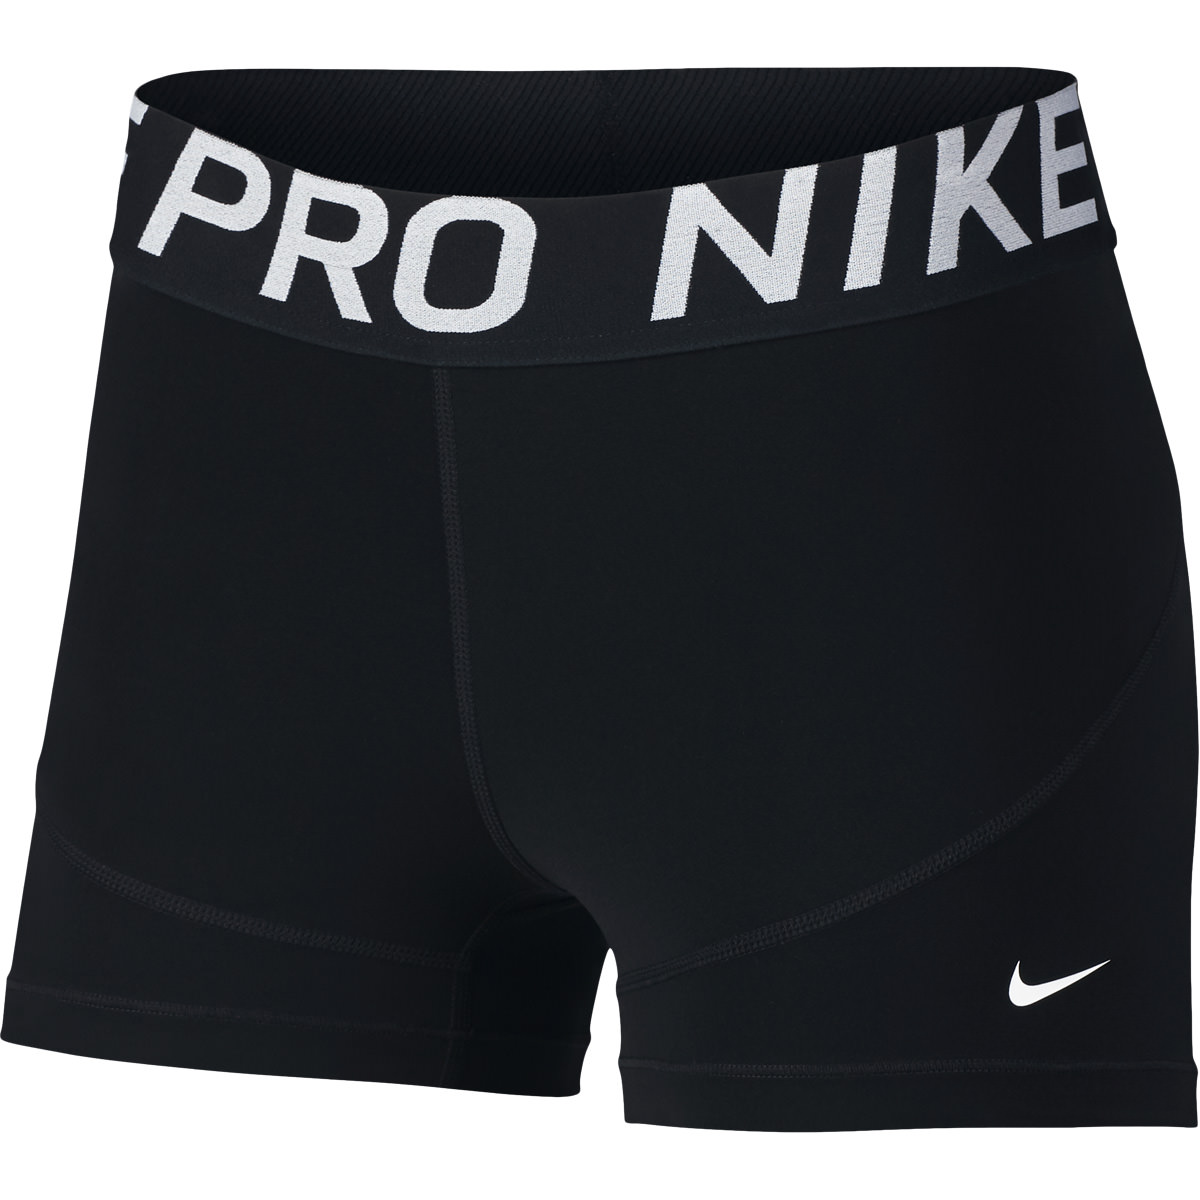 Nike - Pro tights - Shorts -